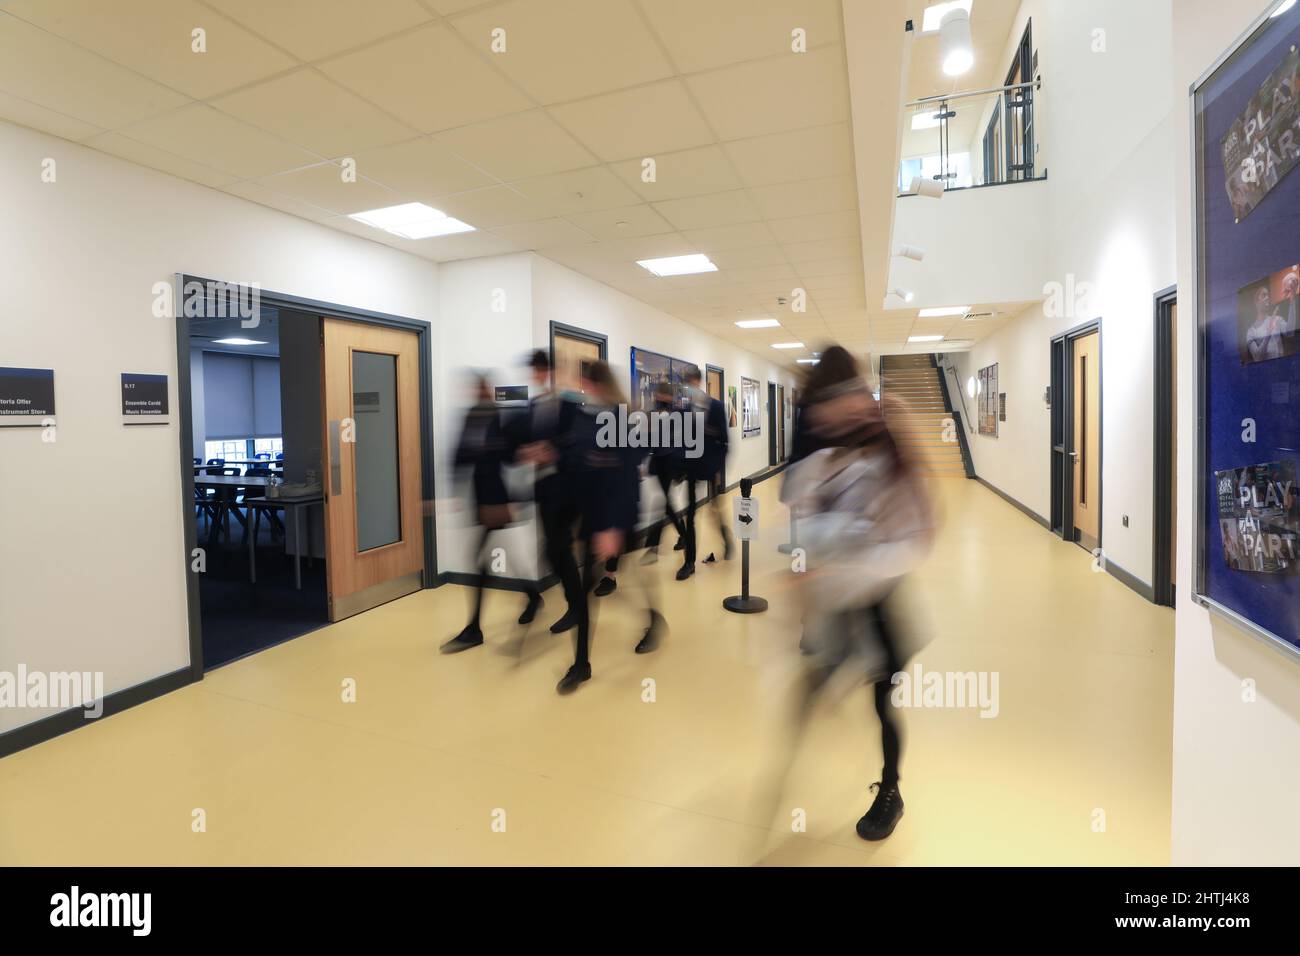 Kinder, die zwischen Klassenzimmern, Schulfluren und Treppen laufen. Langsame Belichtung, um Identität zu verbergen Stockfoto